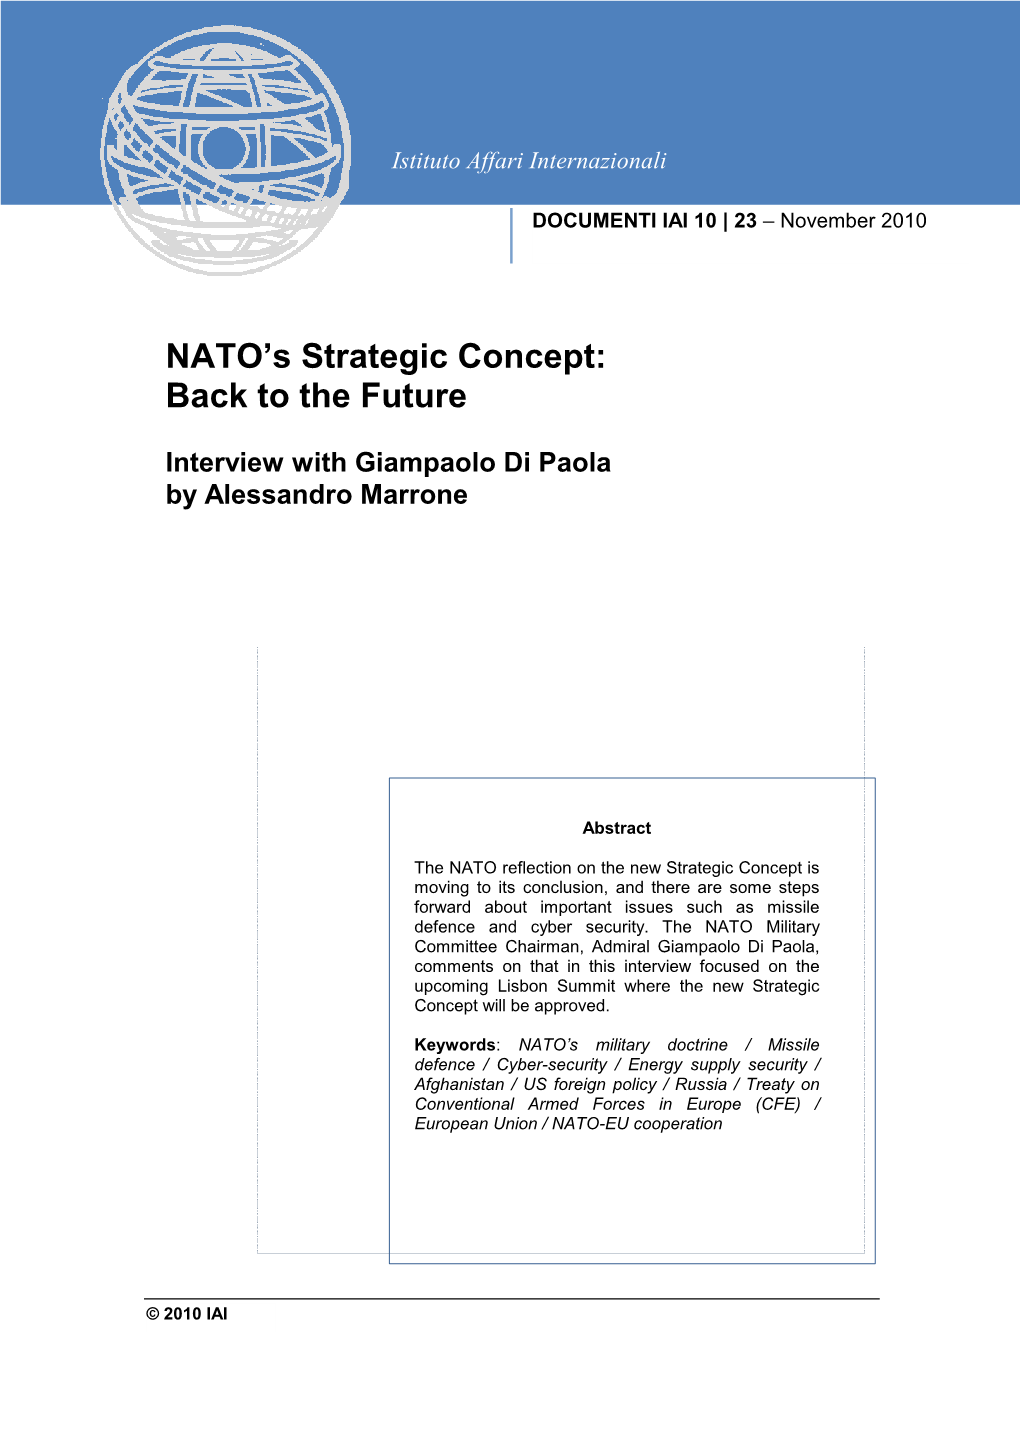 NATO's Strategic Concept